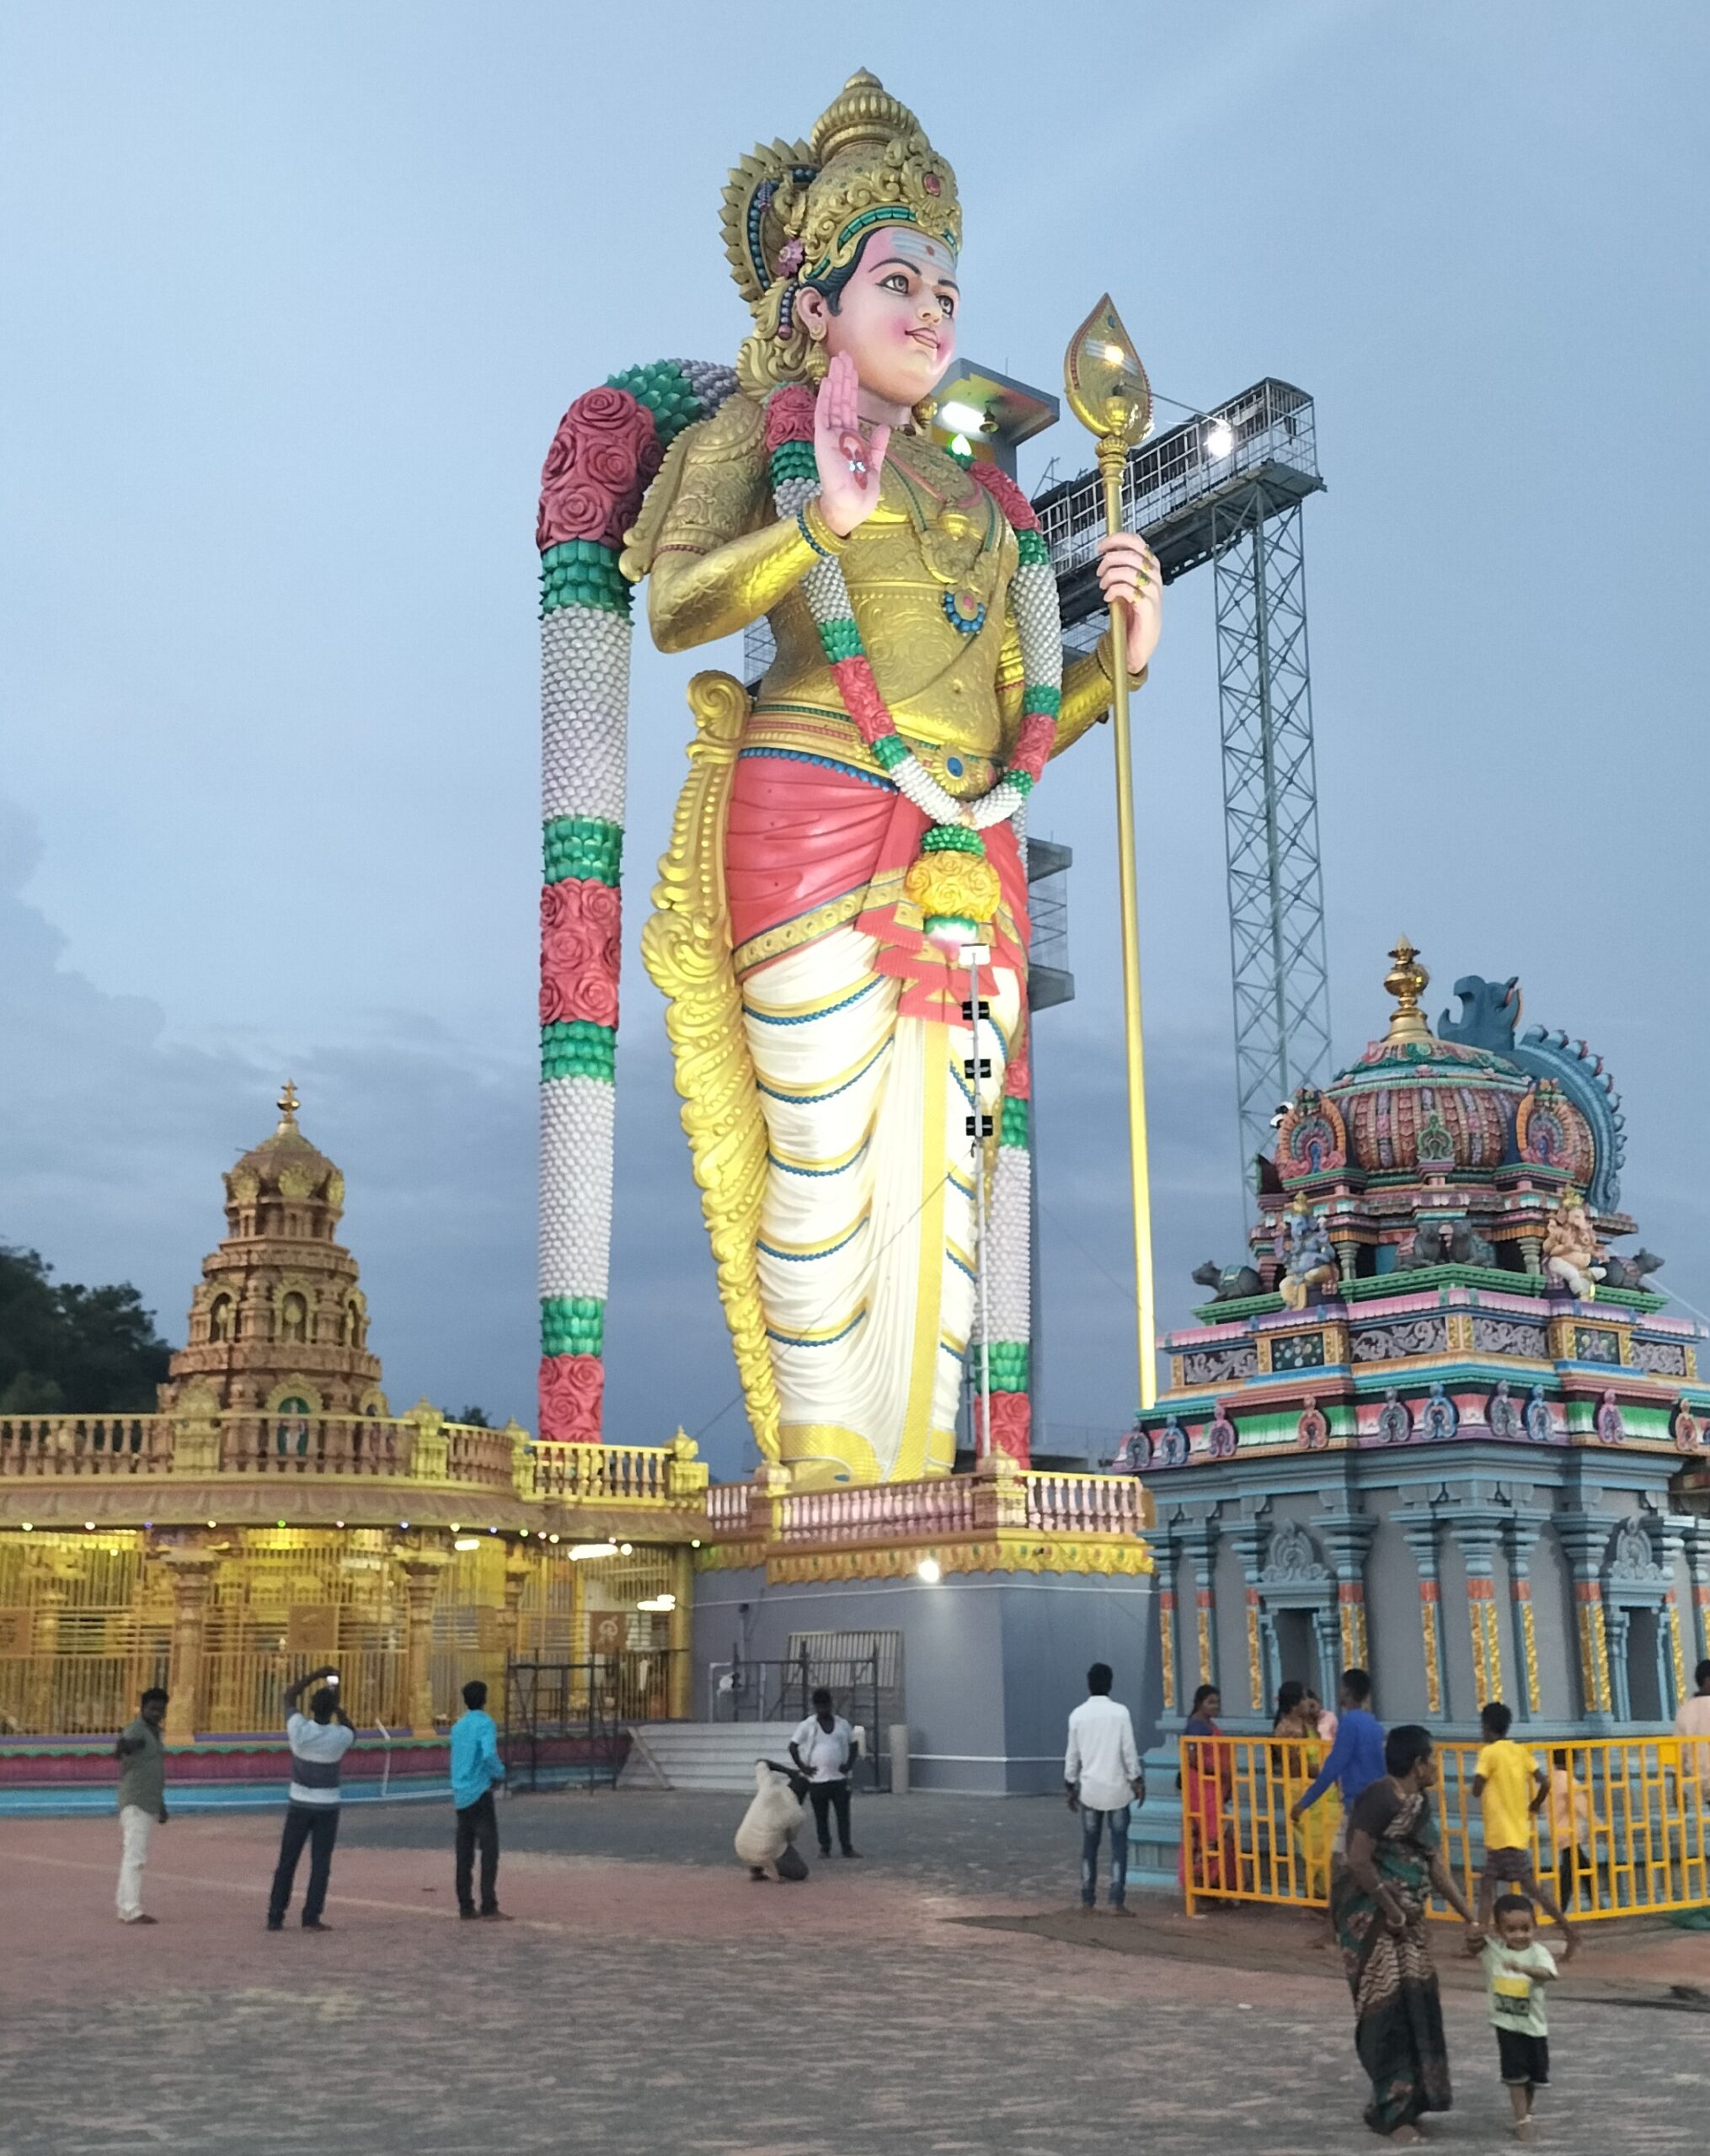 Muthumalai Murugan Temple Salem - Tallest முத்துமலை/muthu malai